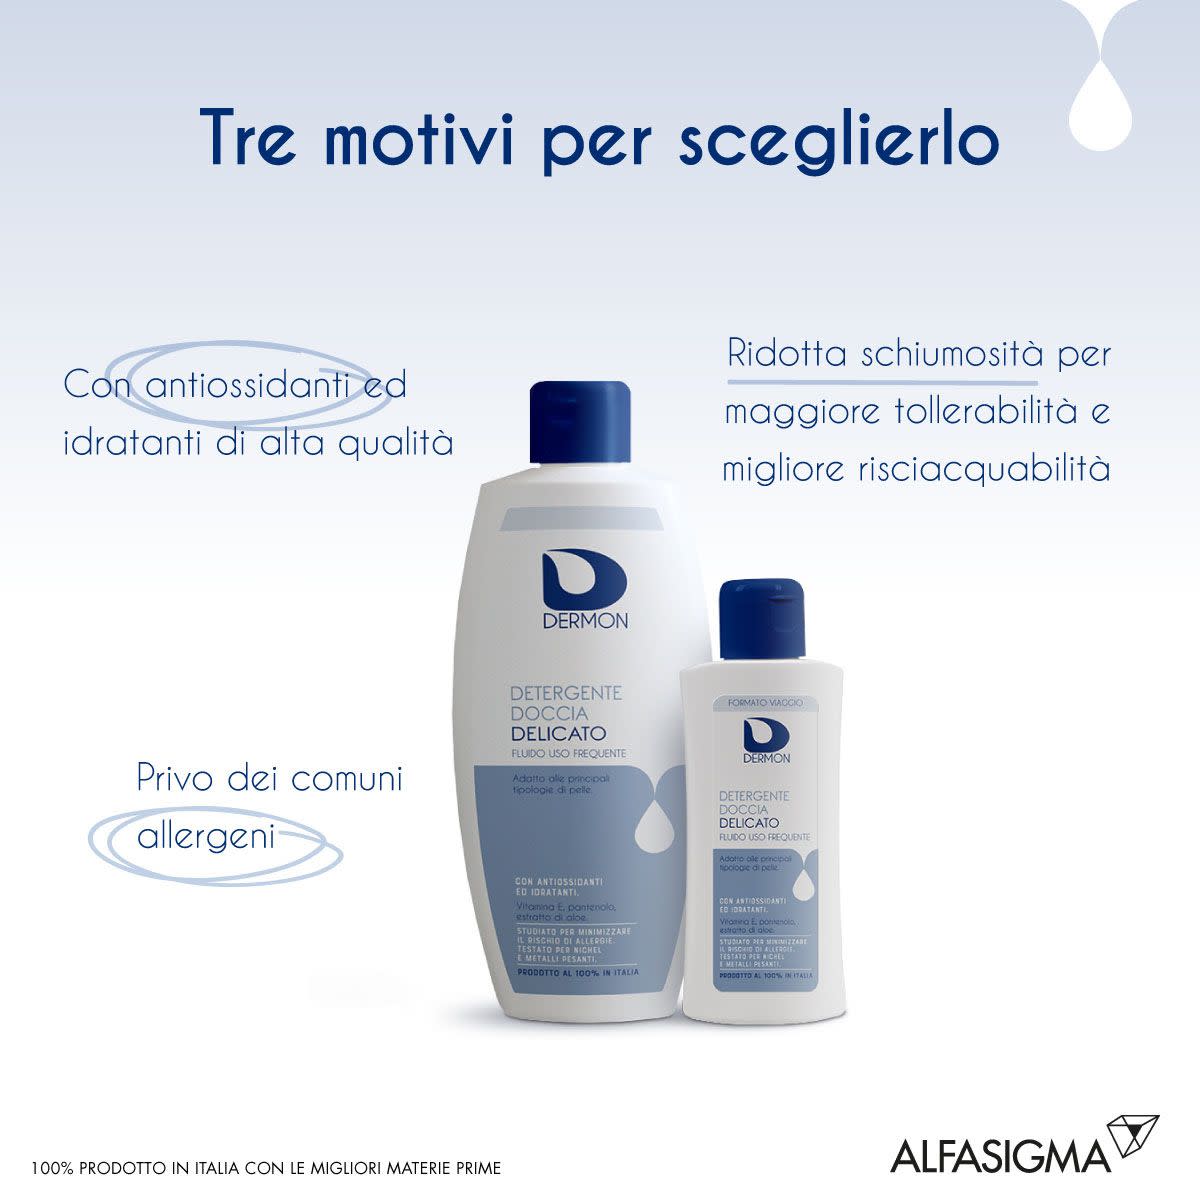 981389291 - Dermon Detergente Doccia delicato 400ml - 4708751_4.jpg